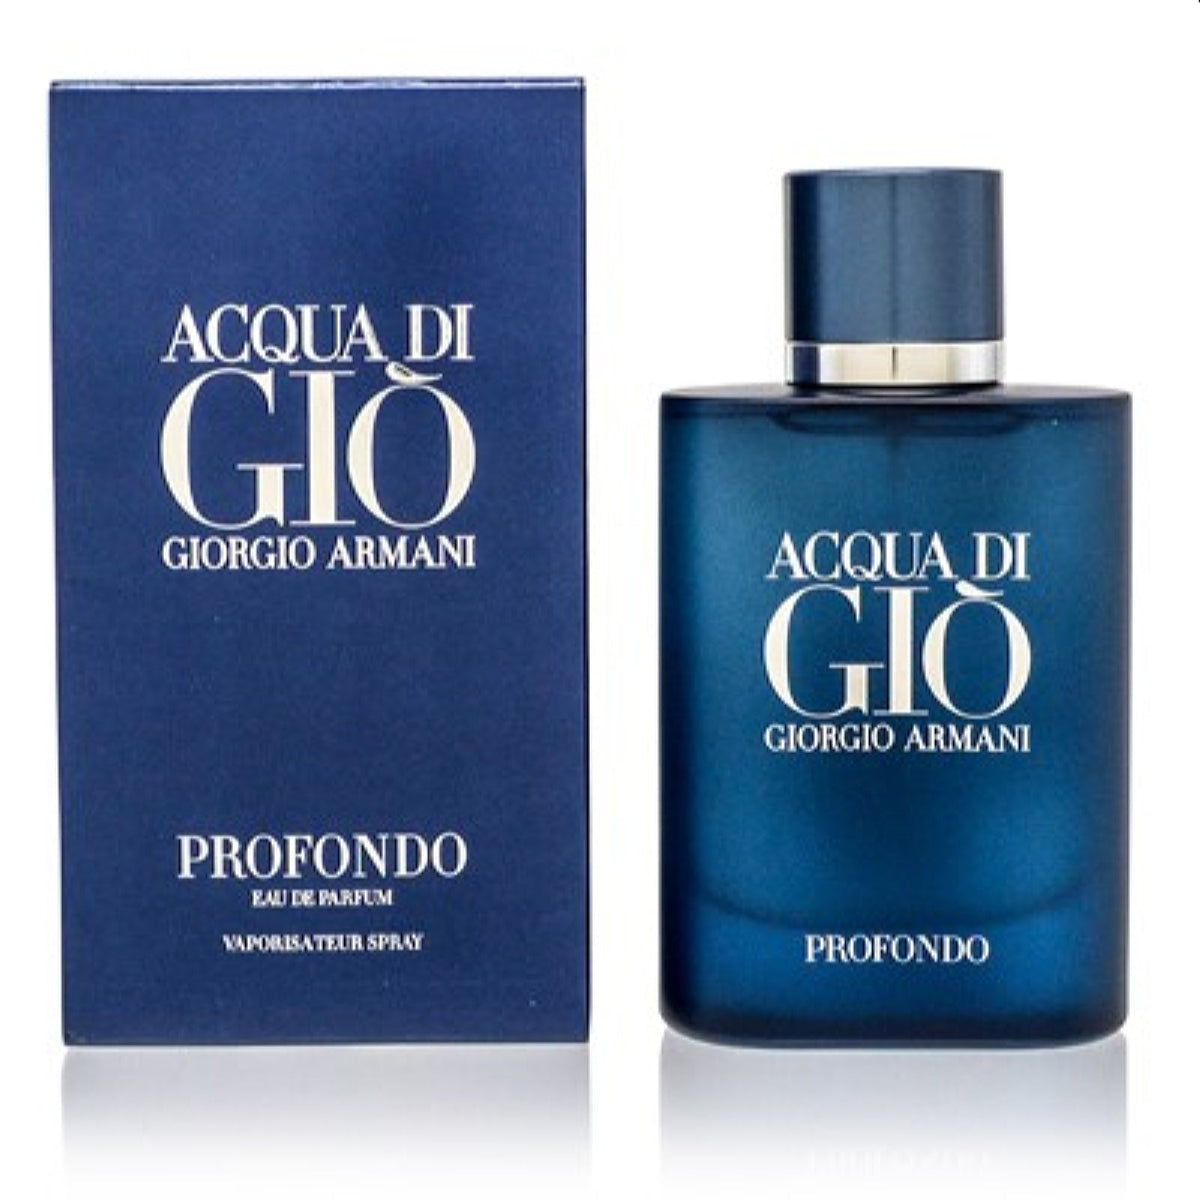 Acqua Di Gio Profondo Giorgio Armani Edp Spray 2.5 Oz (75 Ml) For Men  